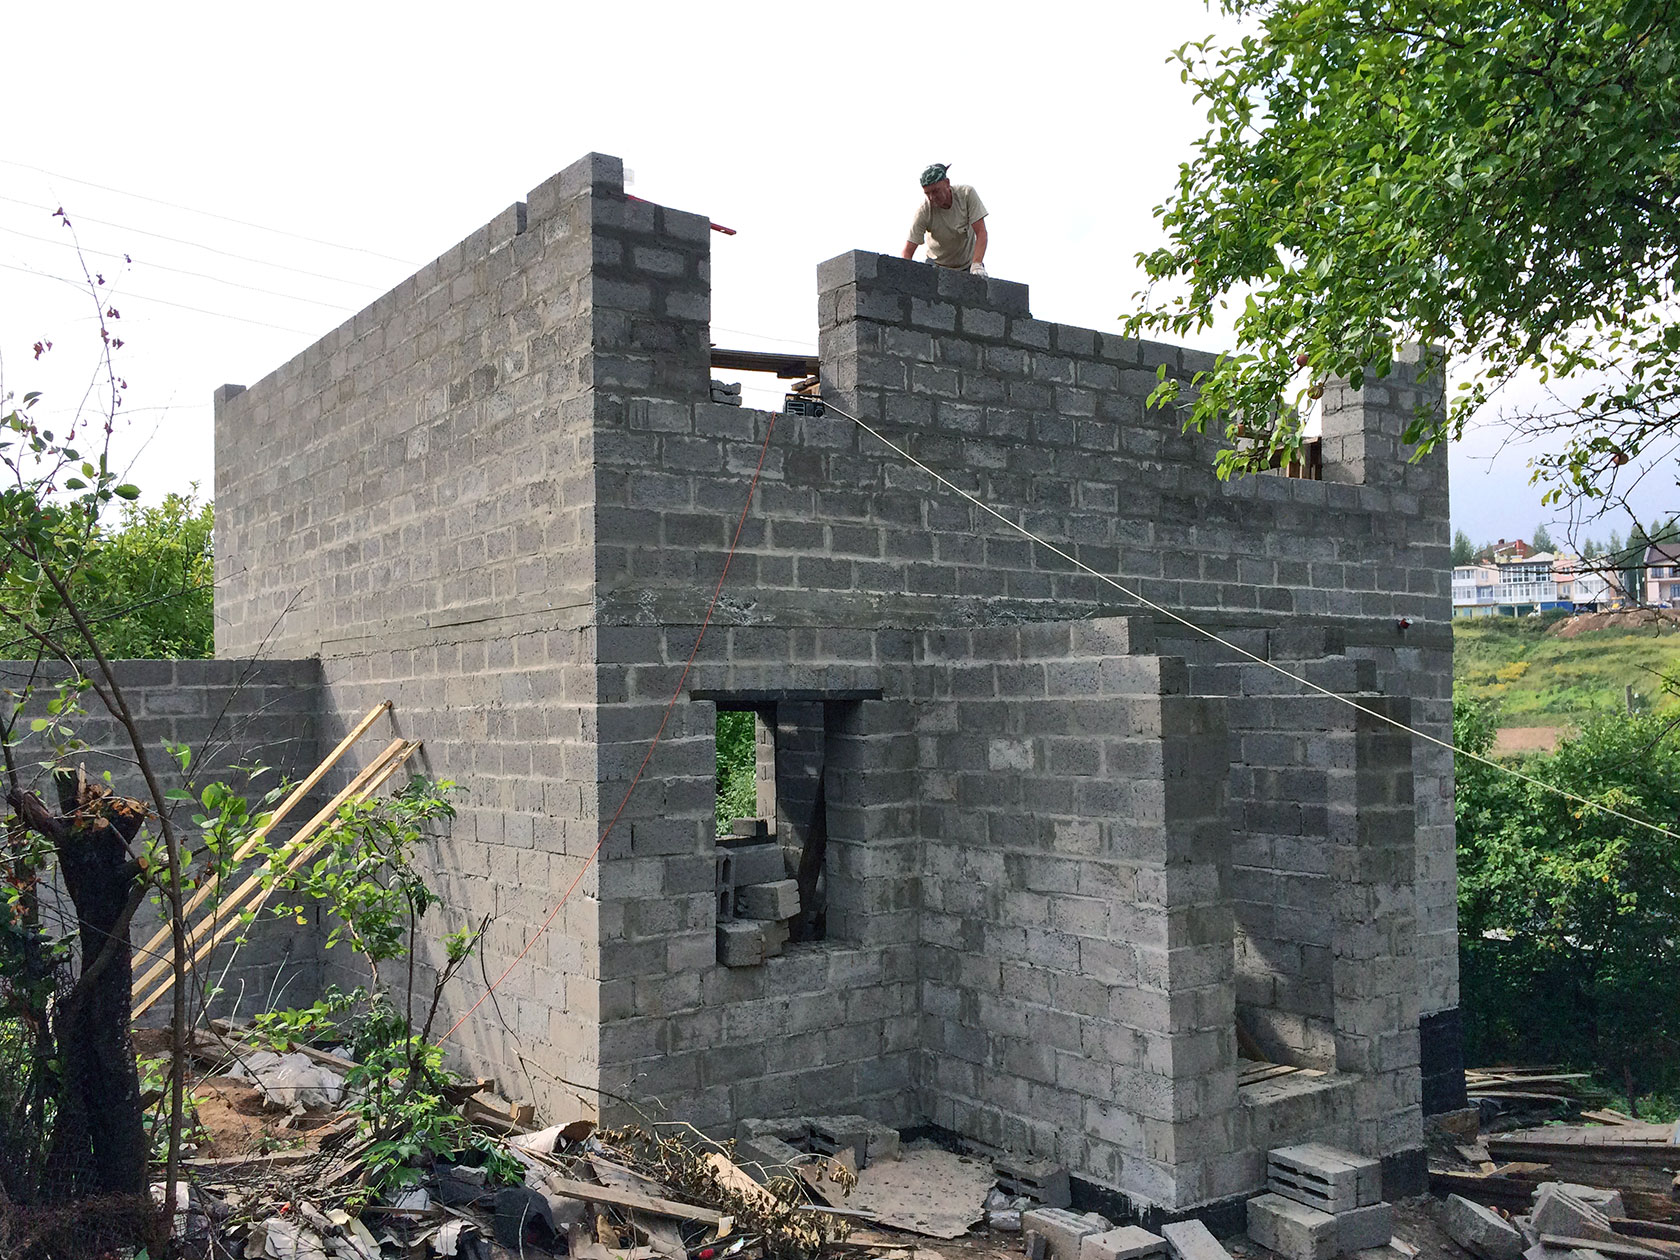 Построить дом своими руками проекты фото из блоков: планировка и строительство конструкций из пенобетона, кладка своими руками